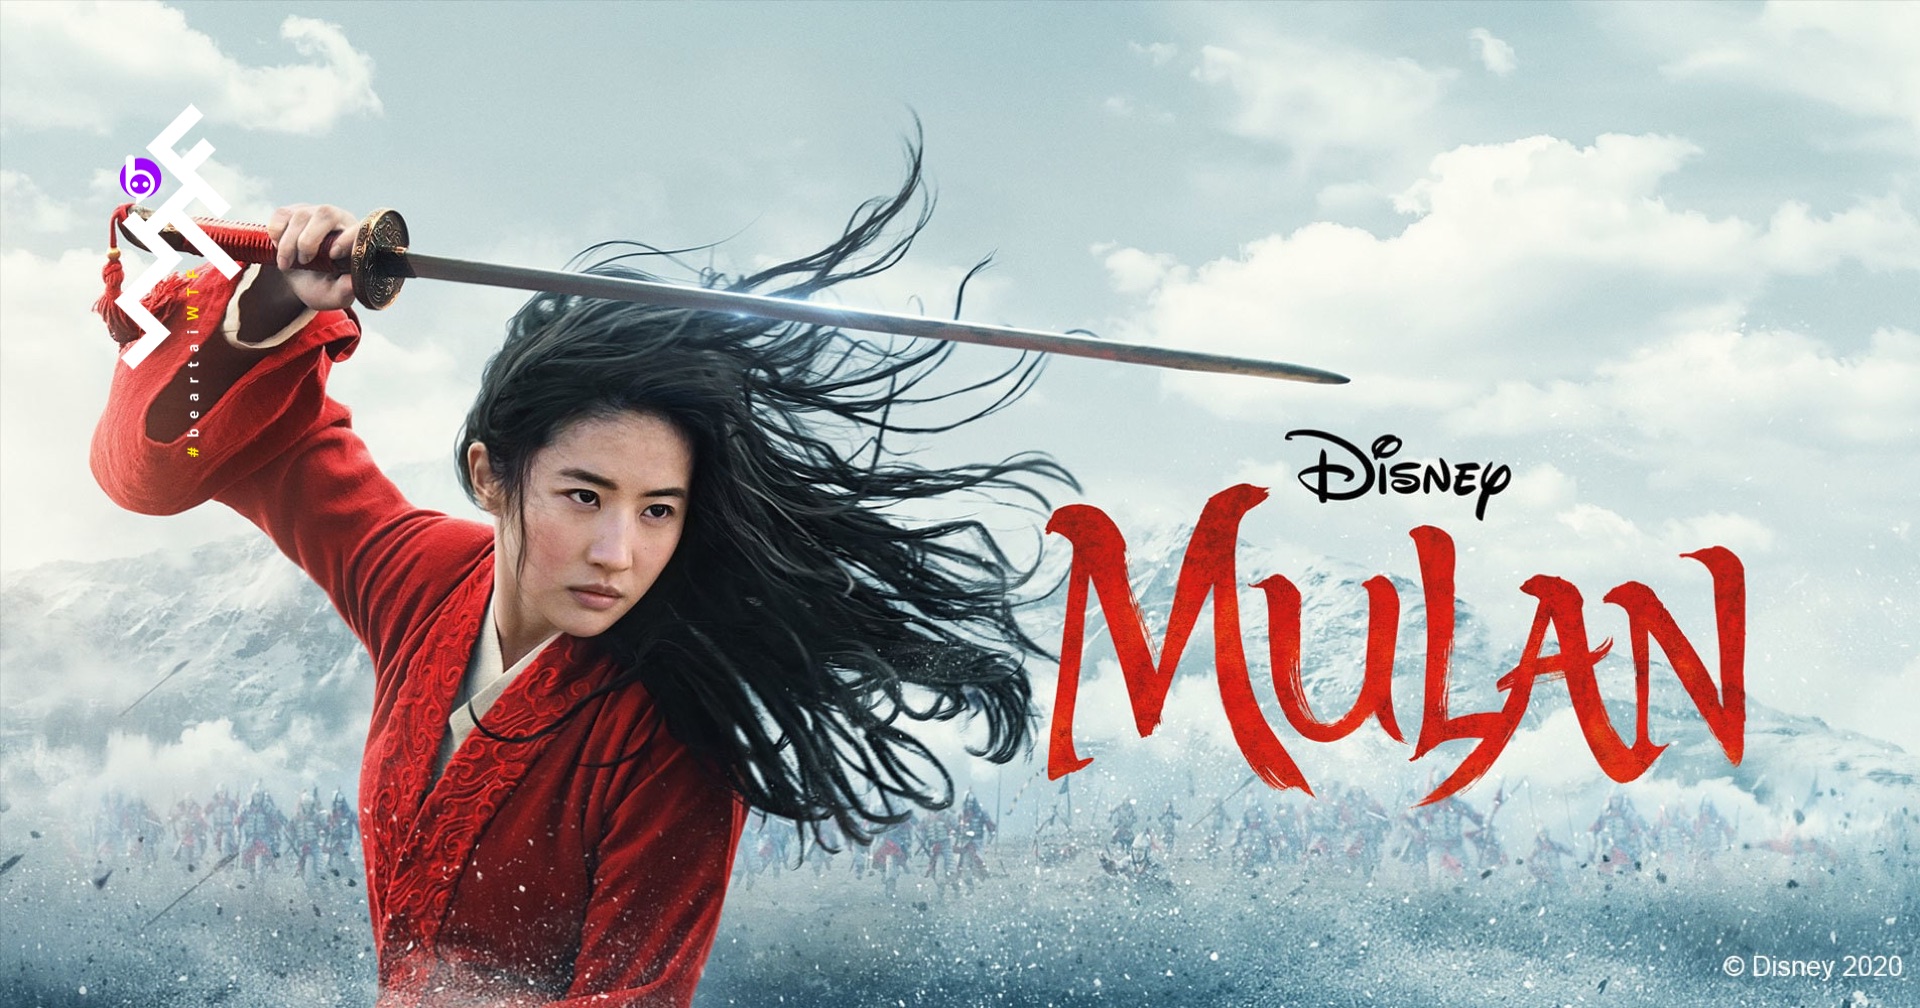 Disney เลื่อนการฉาย Mulan ออกไป รอดูสถานการณ์ Covid-19 ก่อน